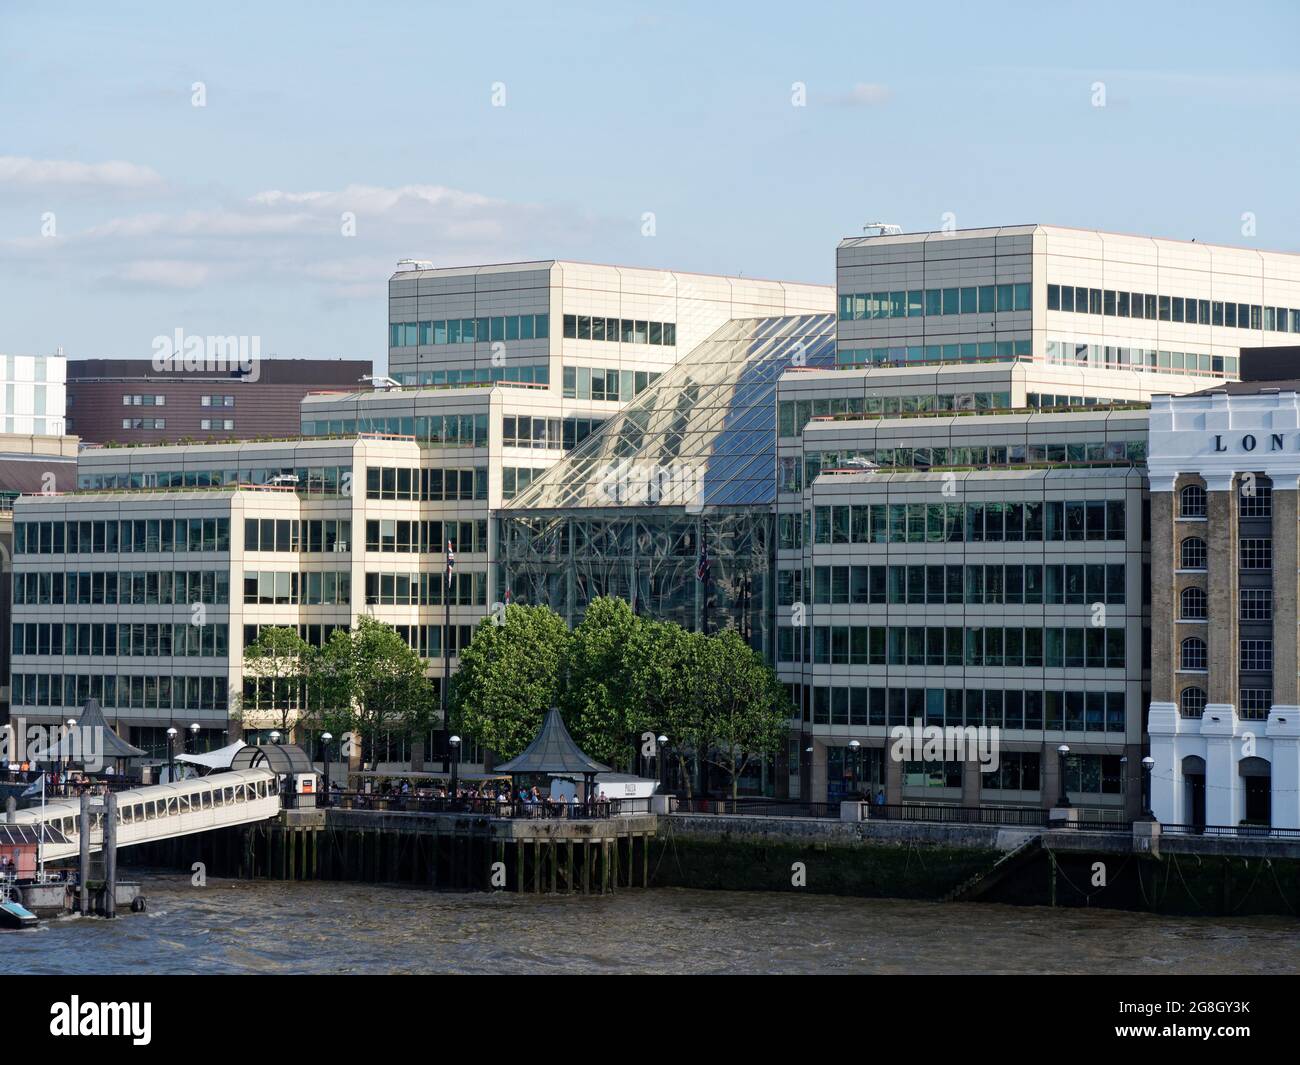 London, Greater London, England, Juni 12 2021: Blick auf einen Pier oder Steg und ein Glasgebäude am Südufer der themse Stockfoto